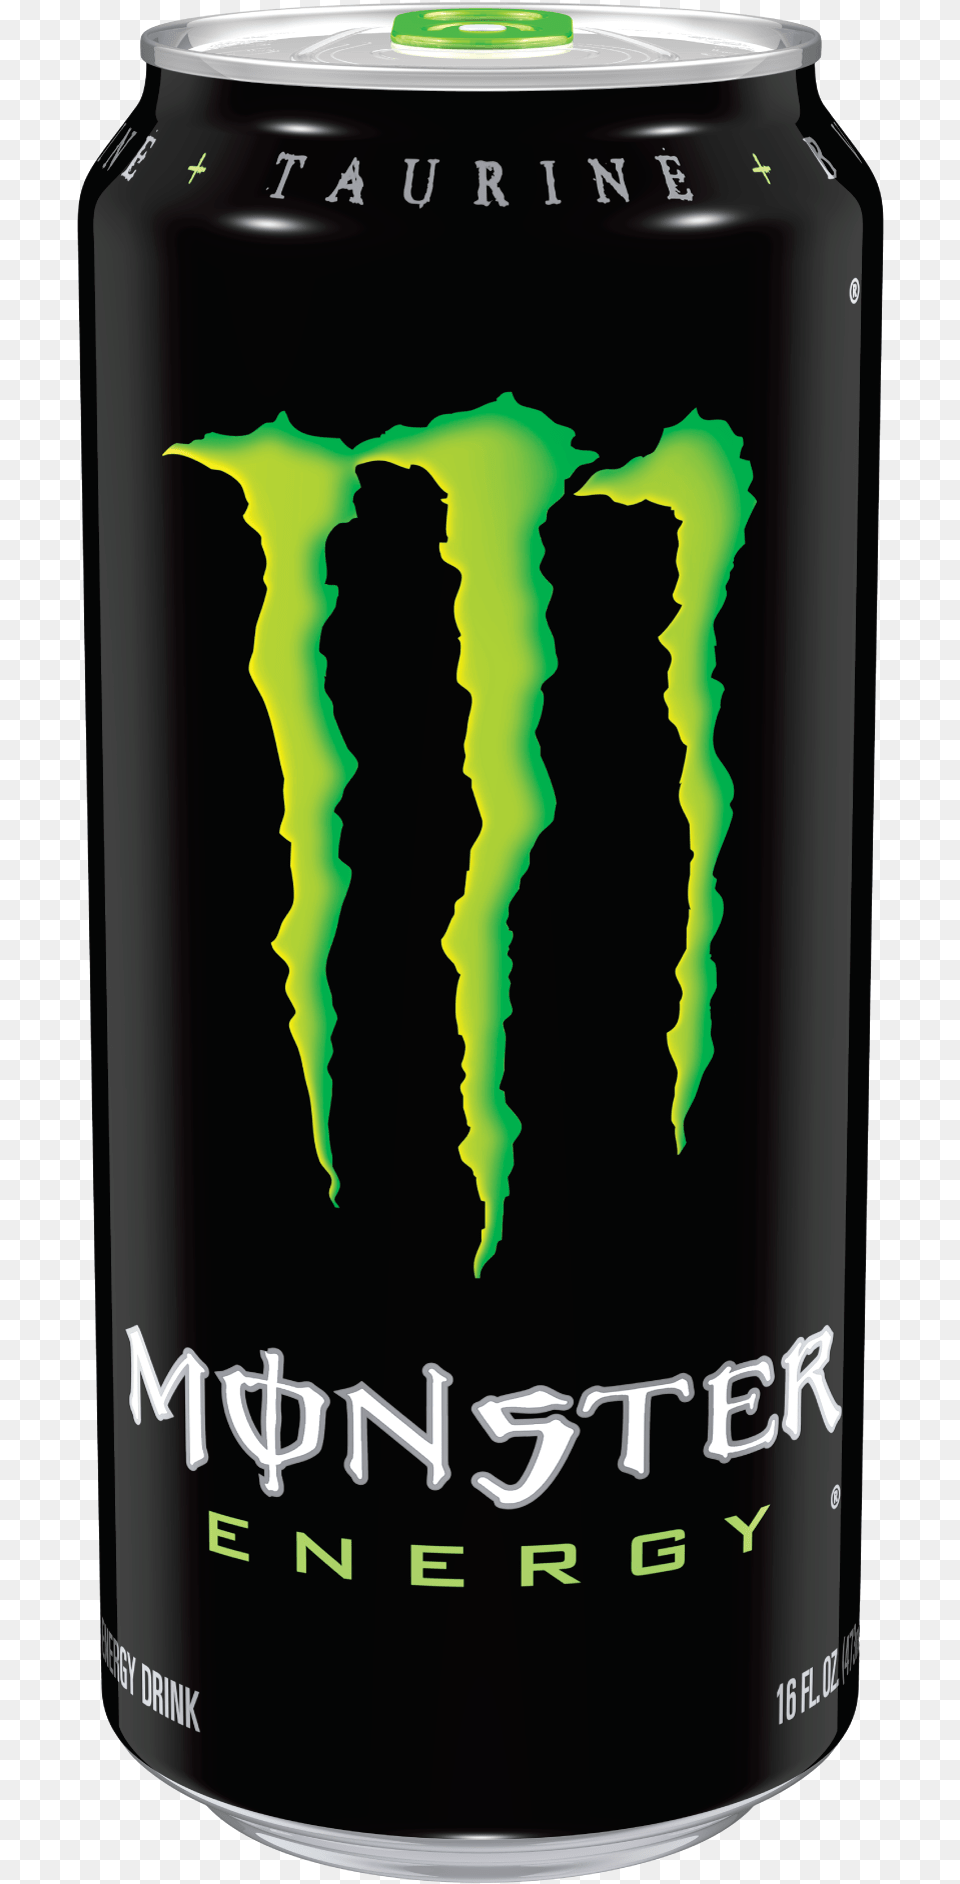 Monster Energy Drink Image Transparent Background, Lager, Alcohol, Beer, Beverage Free Png